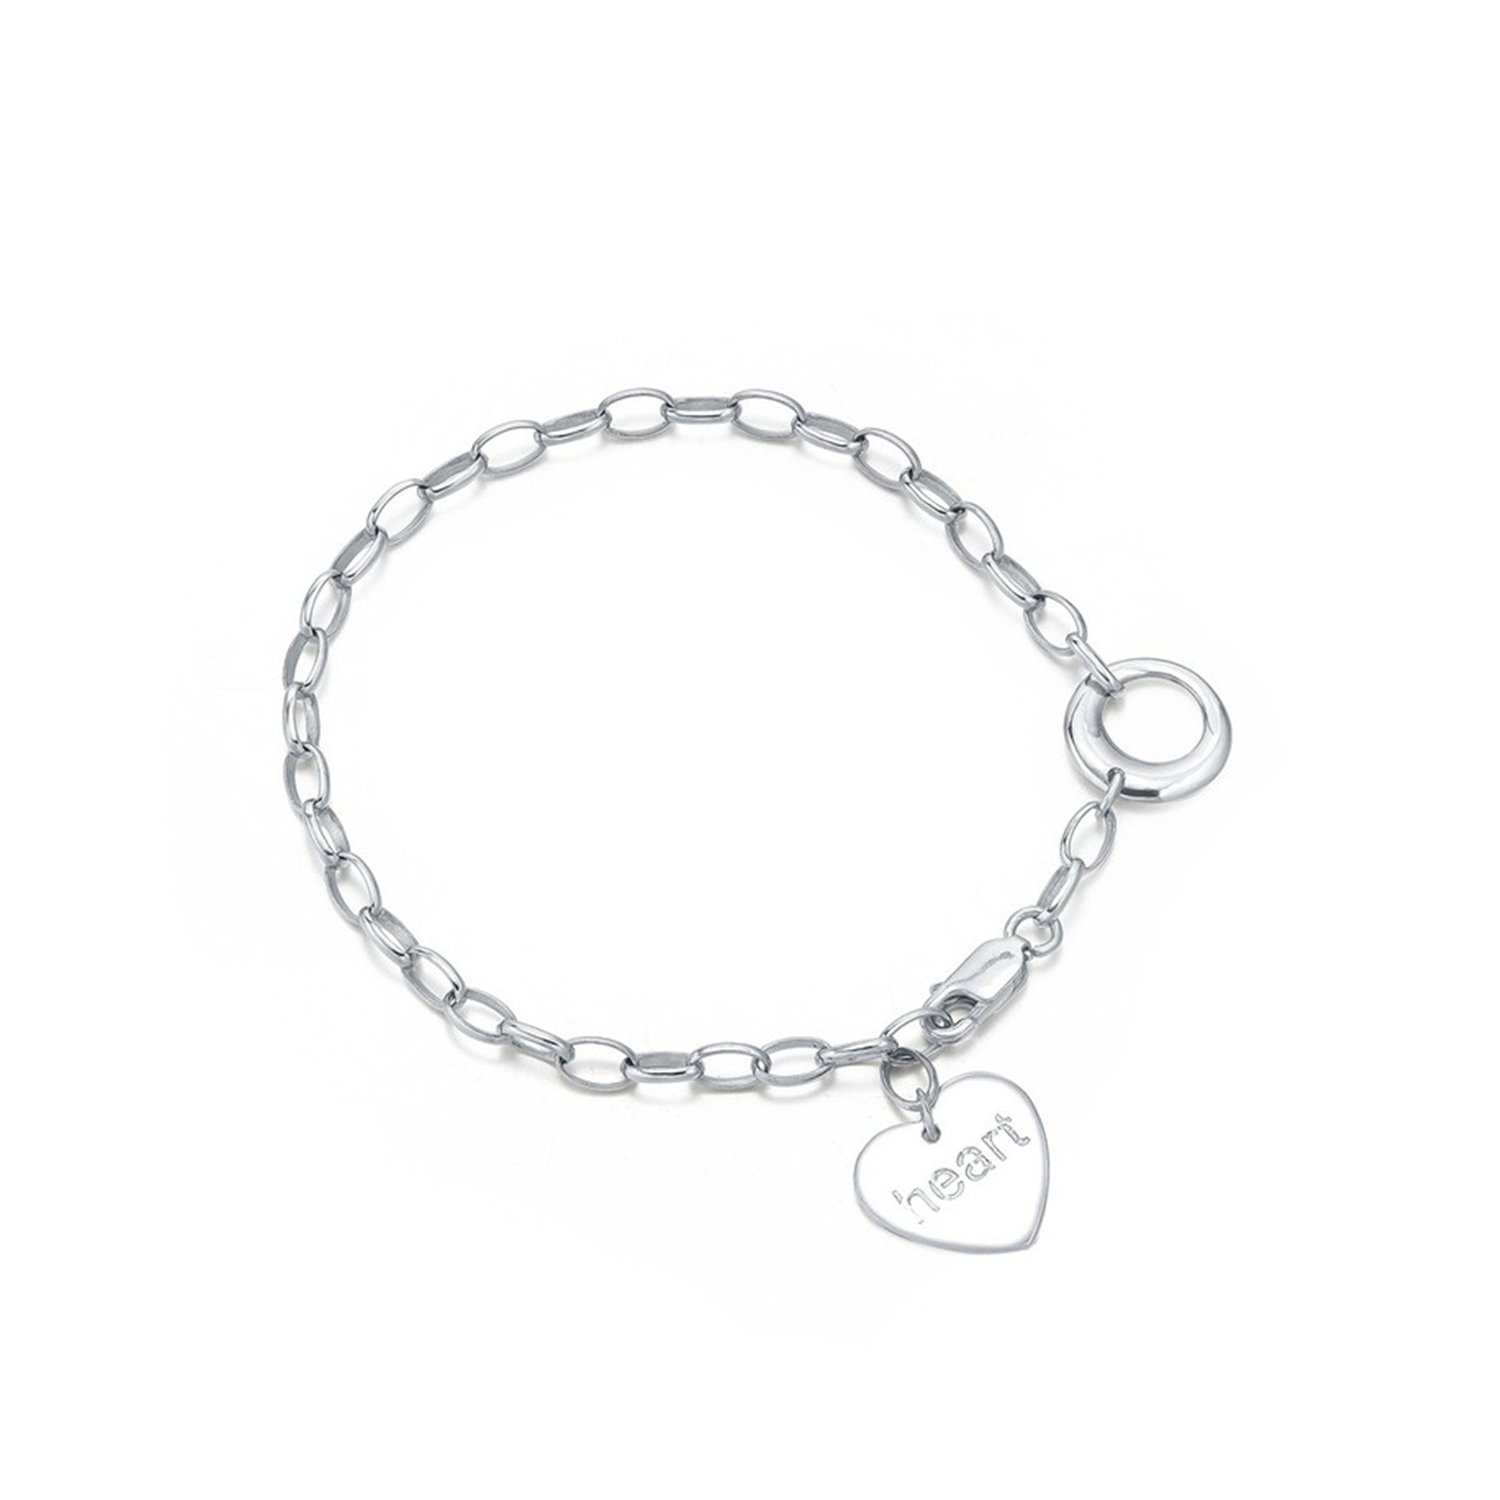 Personalzied women jewelry heart pendant S925 sterling silver bracelet bangles chain bracelets(图1)